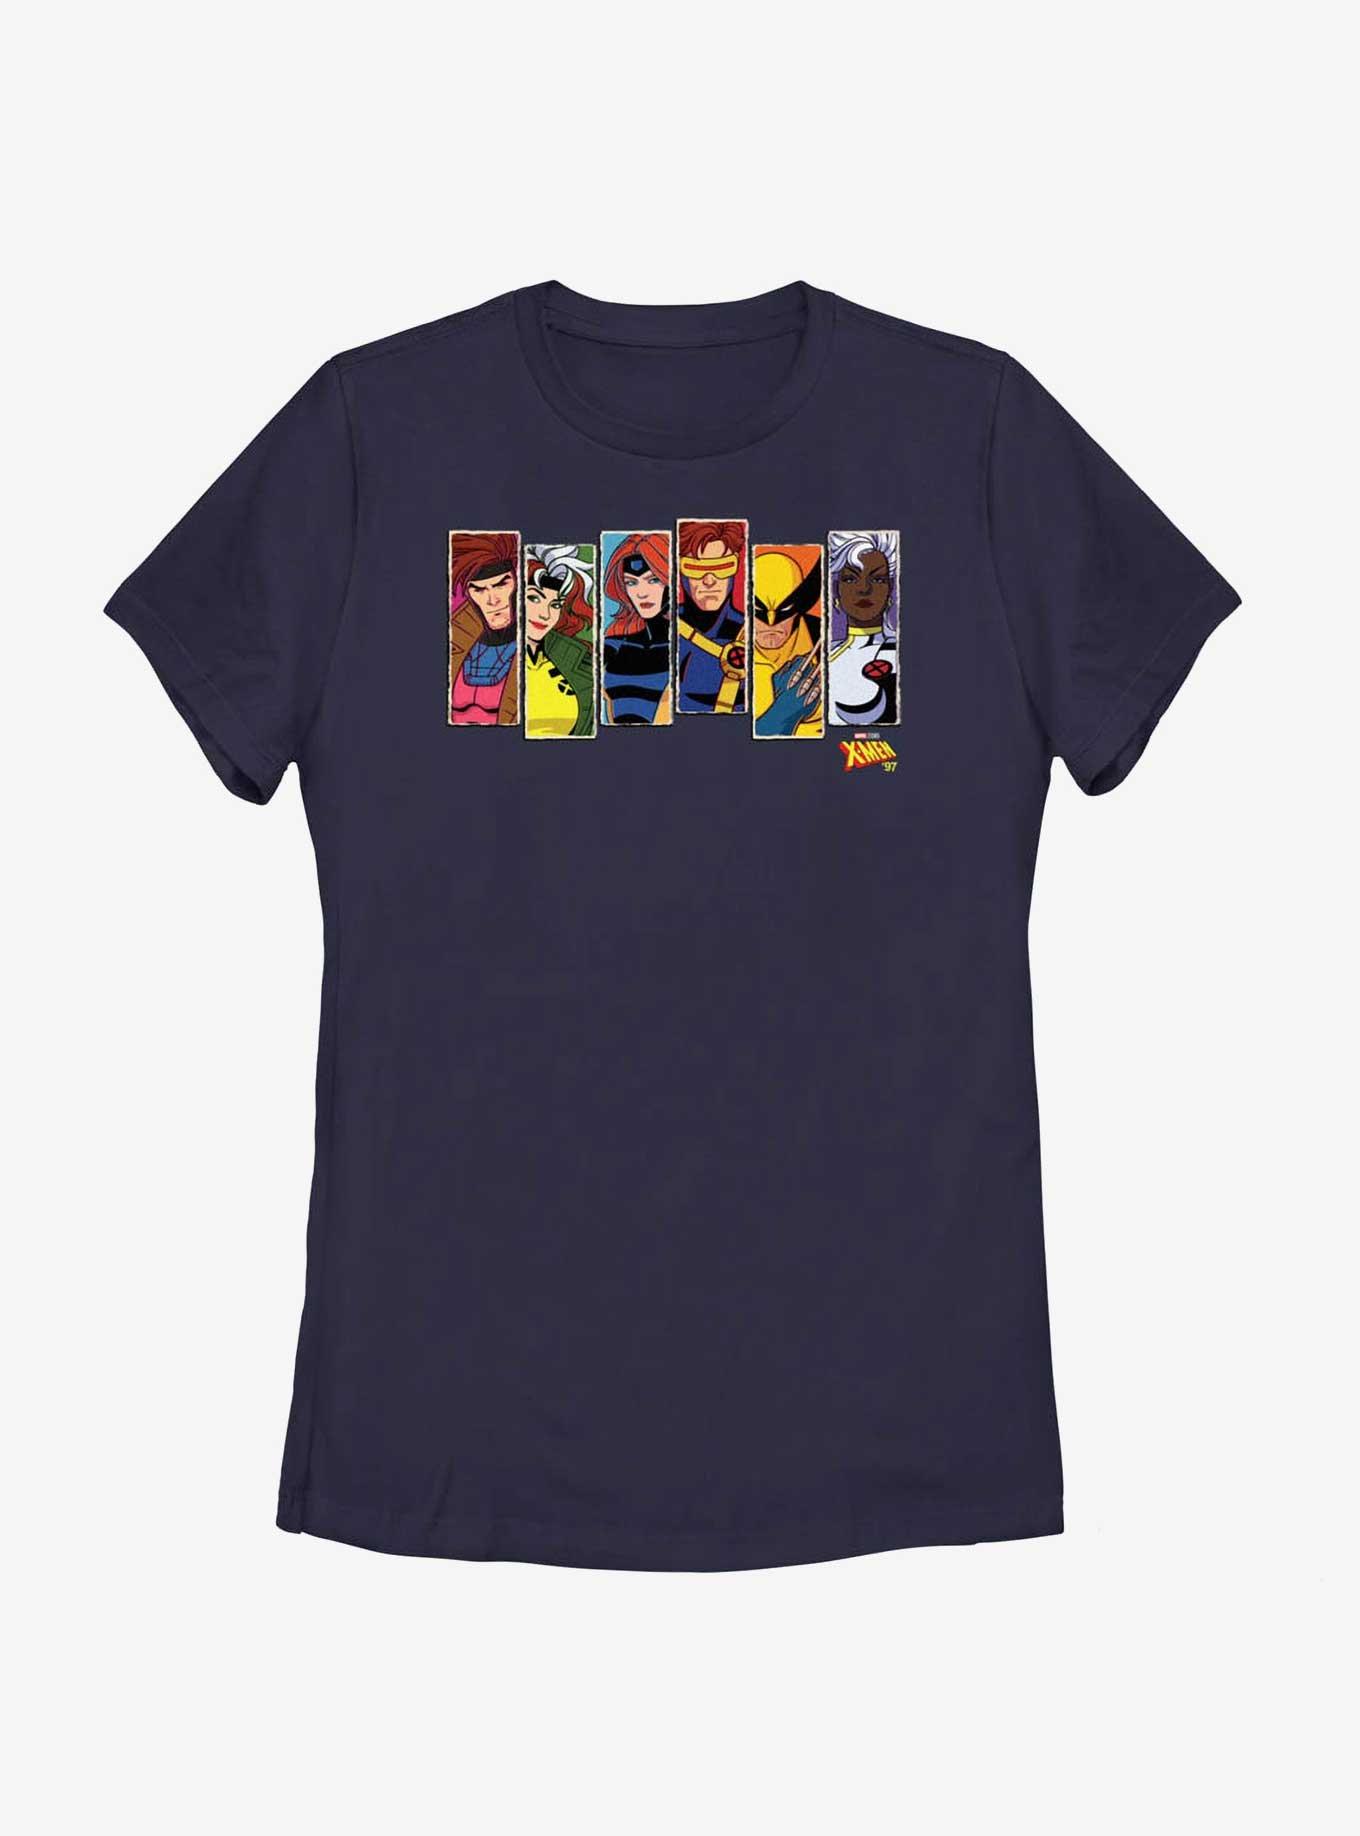 Marvel X-Men '97 Portraits Womens T-Shirt, NAVY, hi-res